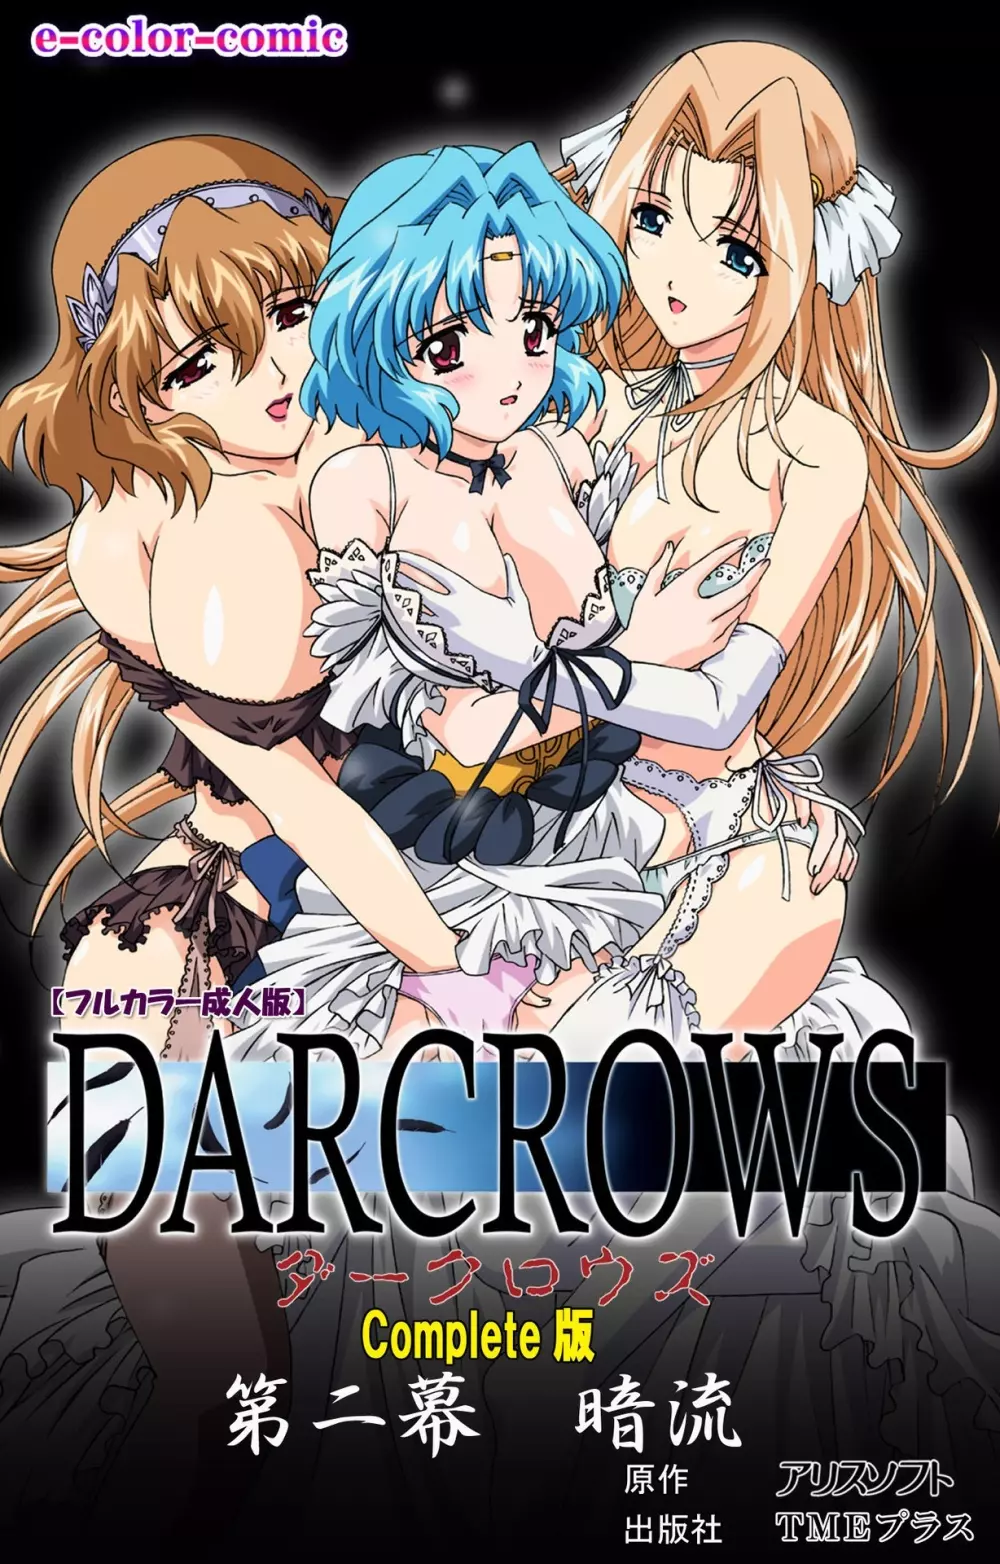 【フルカラー成人版】 DARCROWS 第二幕 Complete版